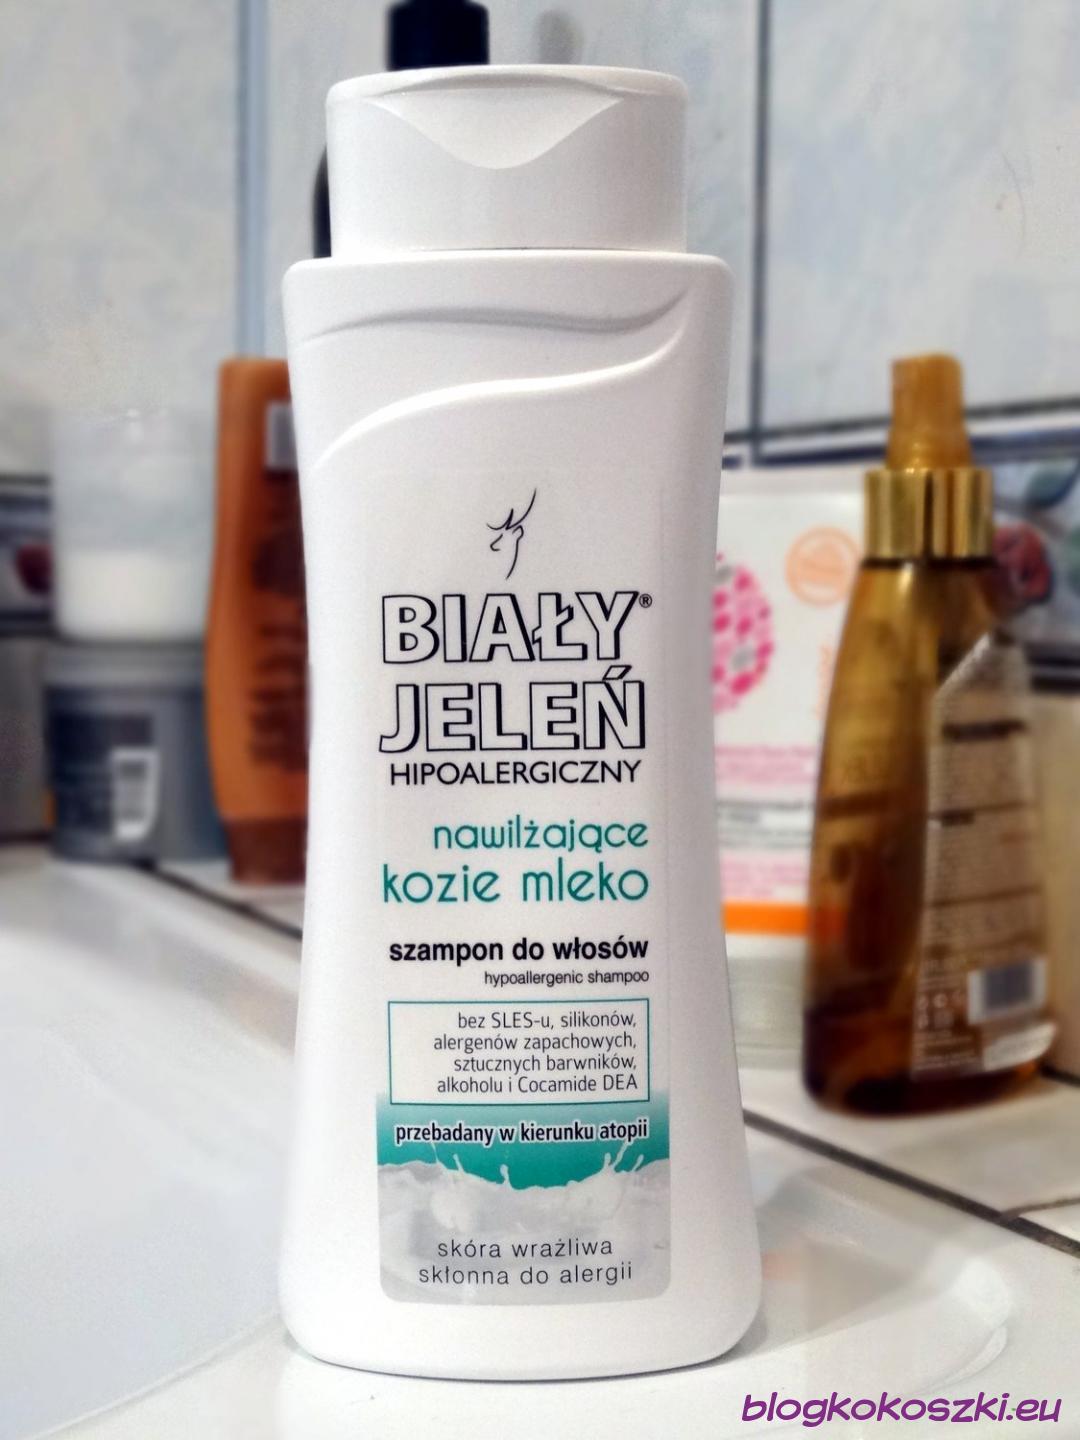 szampon biały jeleń po keratynowym prostowaniu